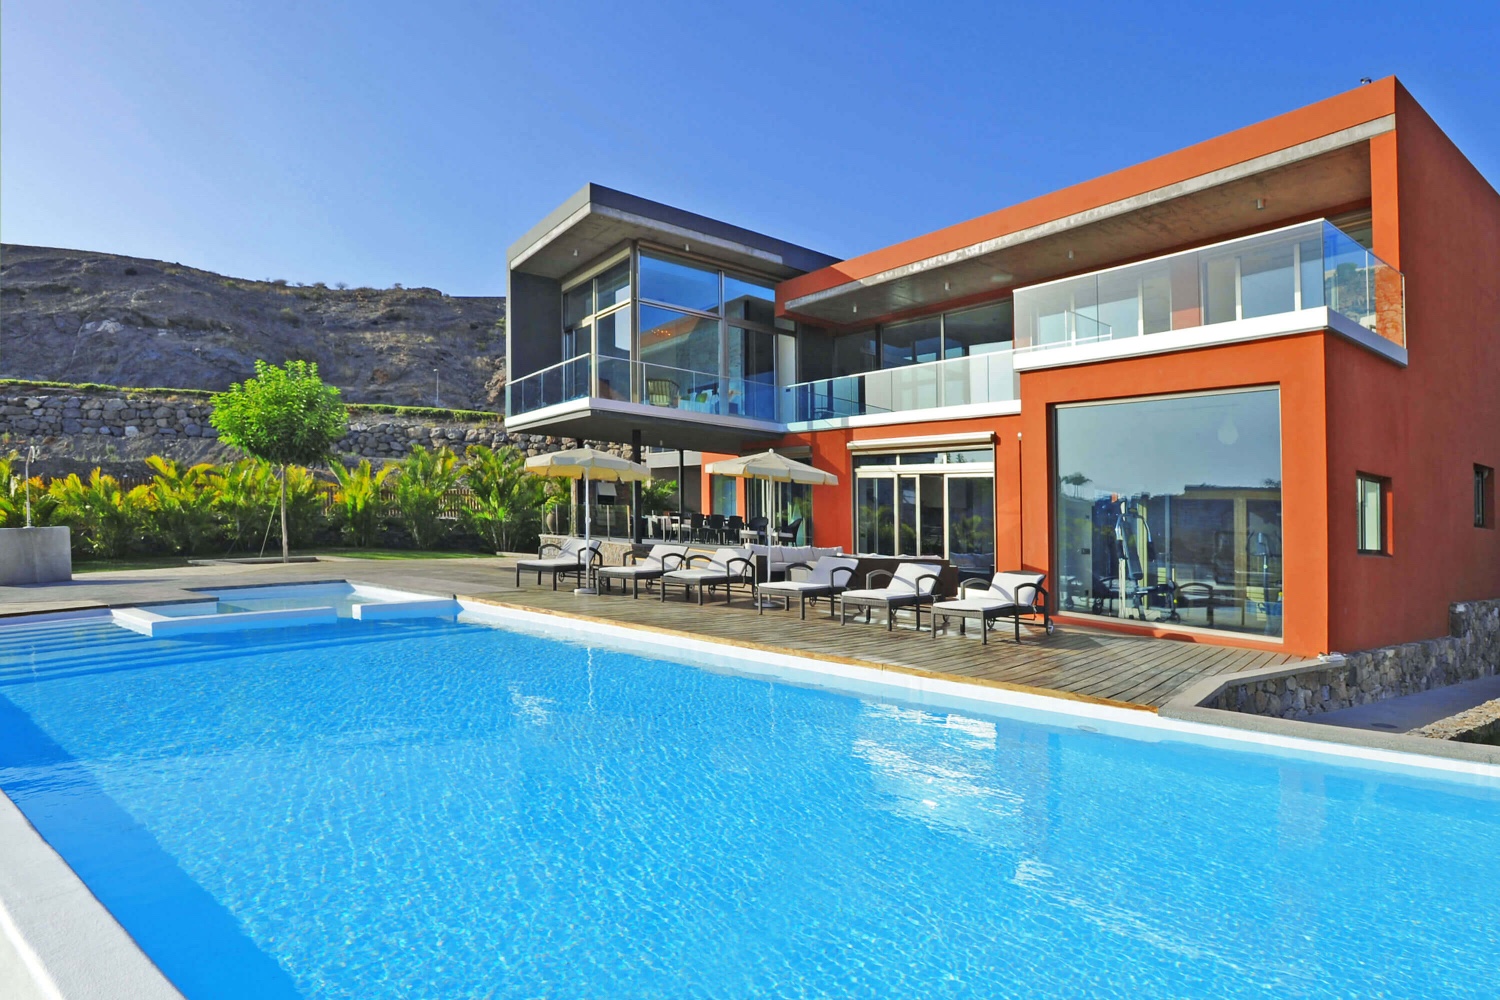 Prachtige luxe villa met 4 slaapkamers in de eerste lijn aan de golfbaan met een ruim interieur, een fitnessruimte, sauna en zwembad